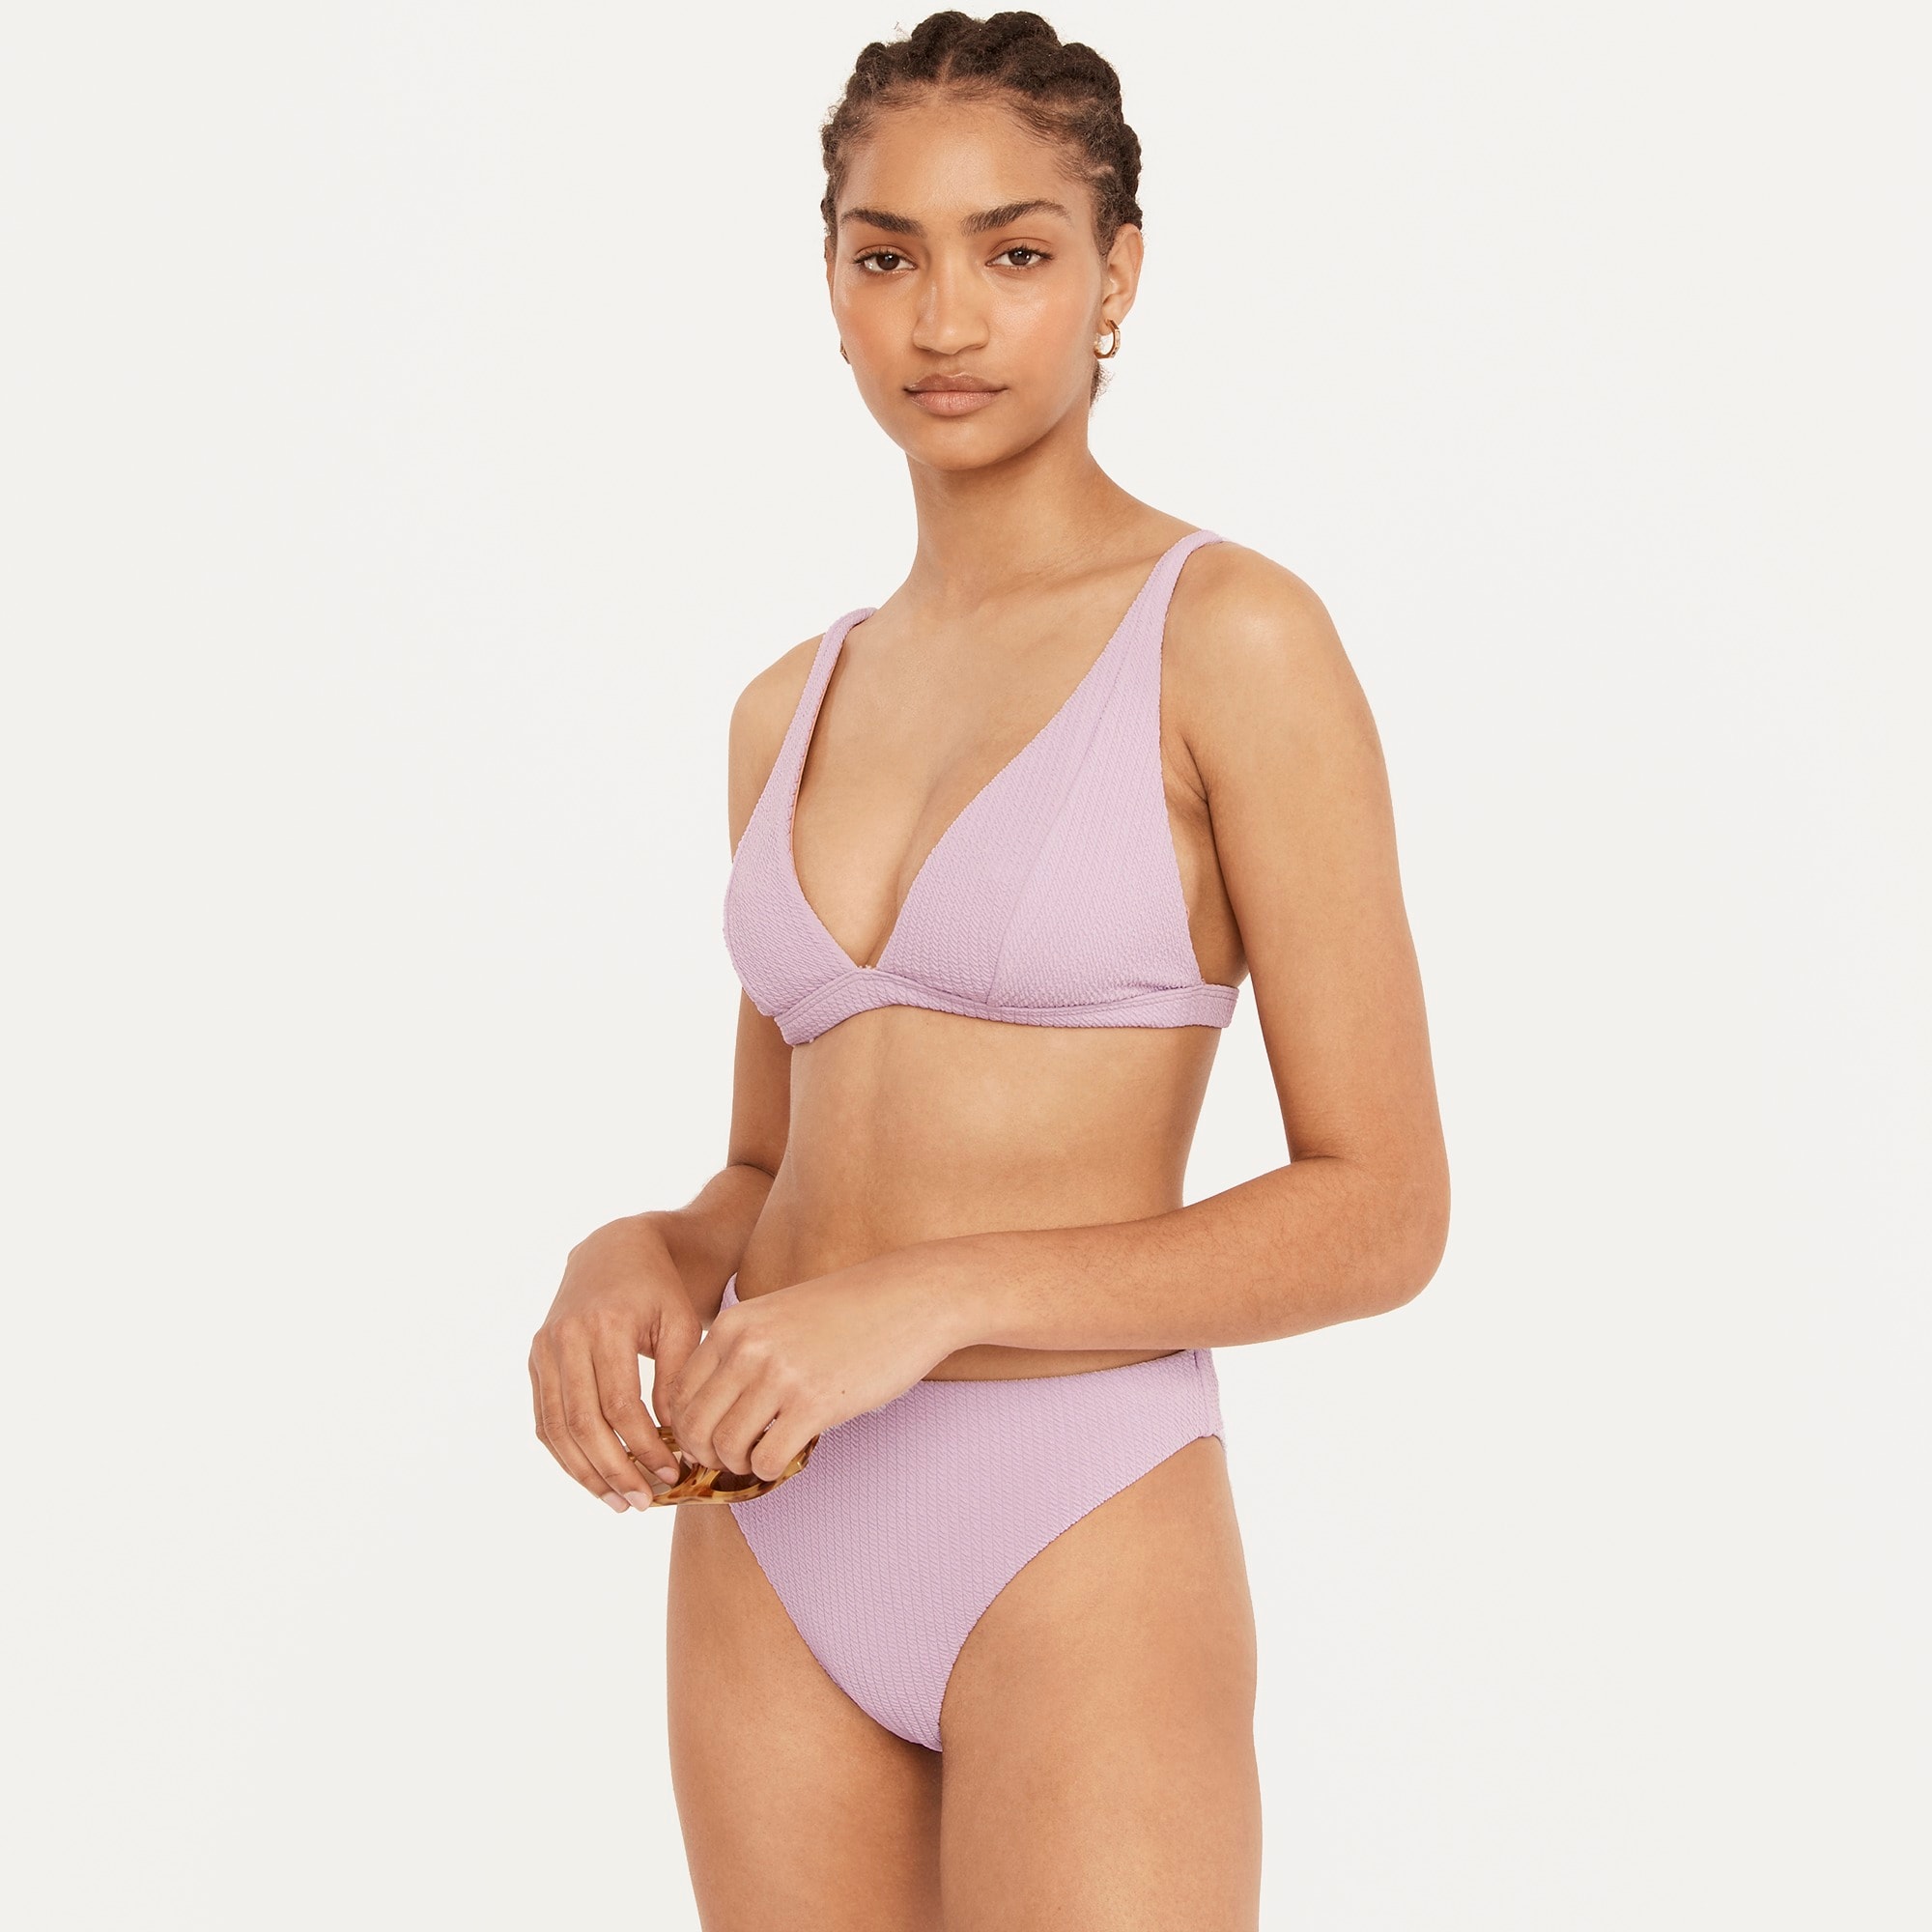 J.Crew: Textured Plunge Bikini Top For Women